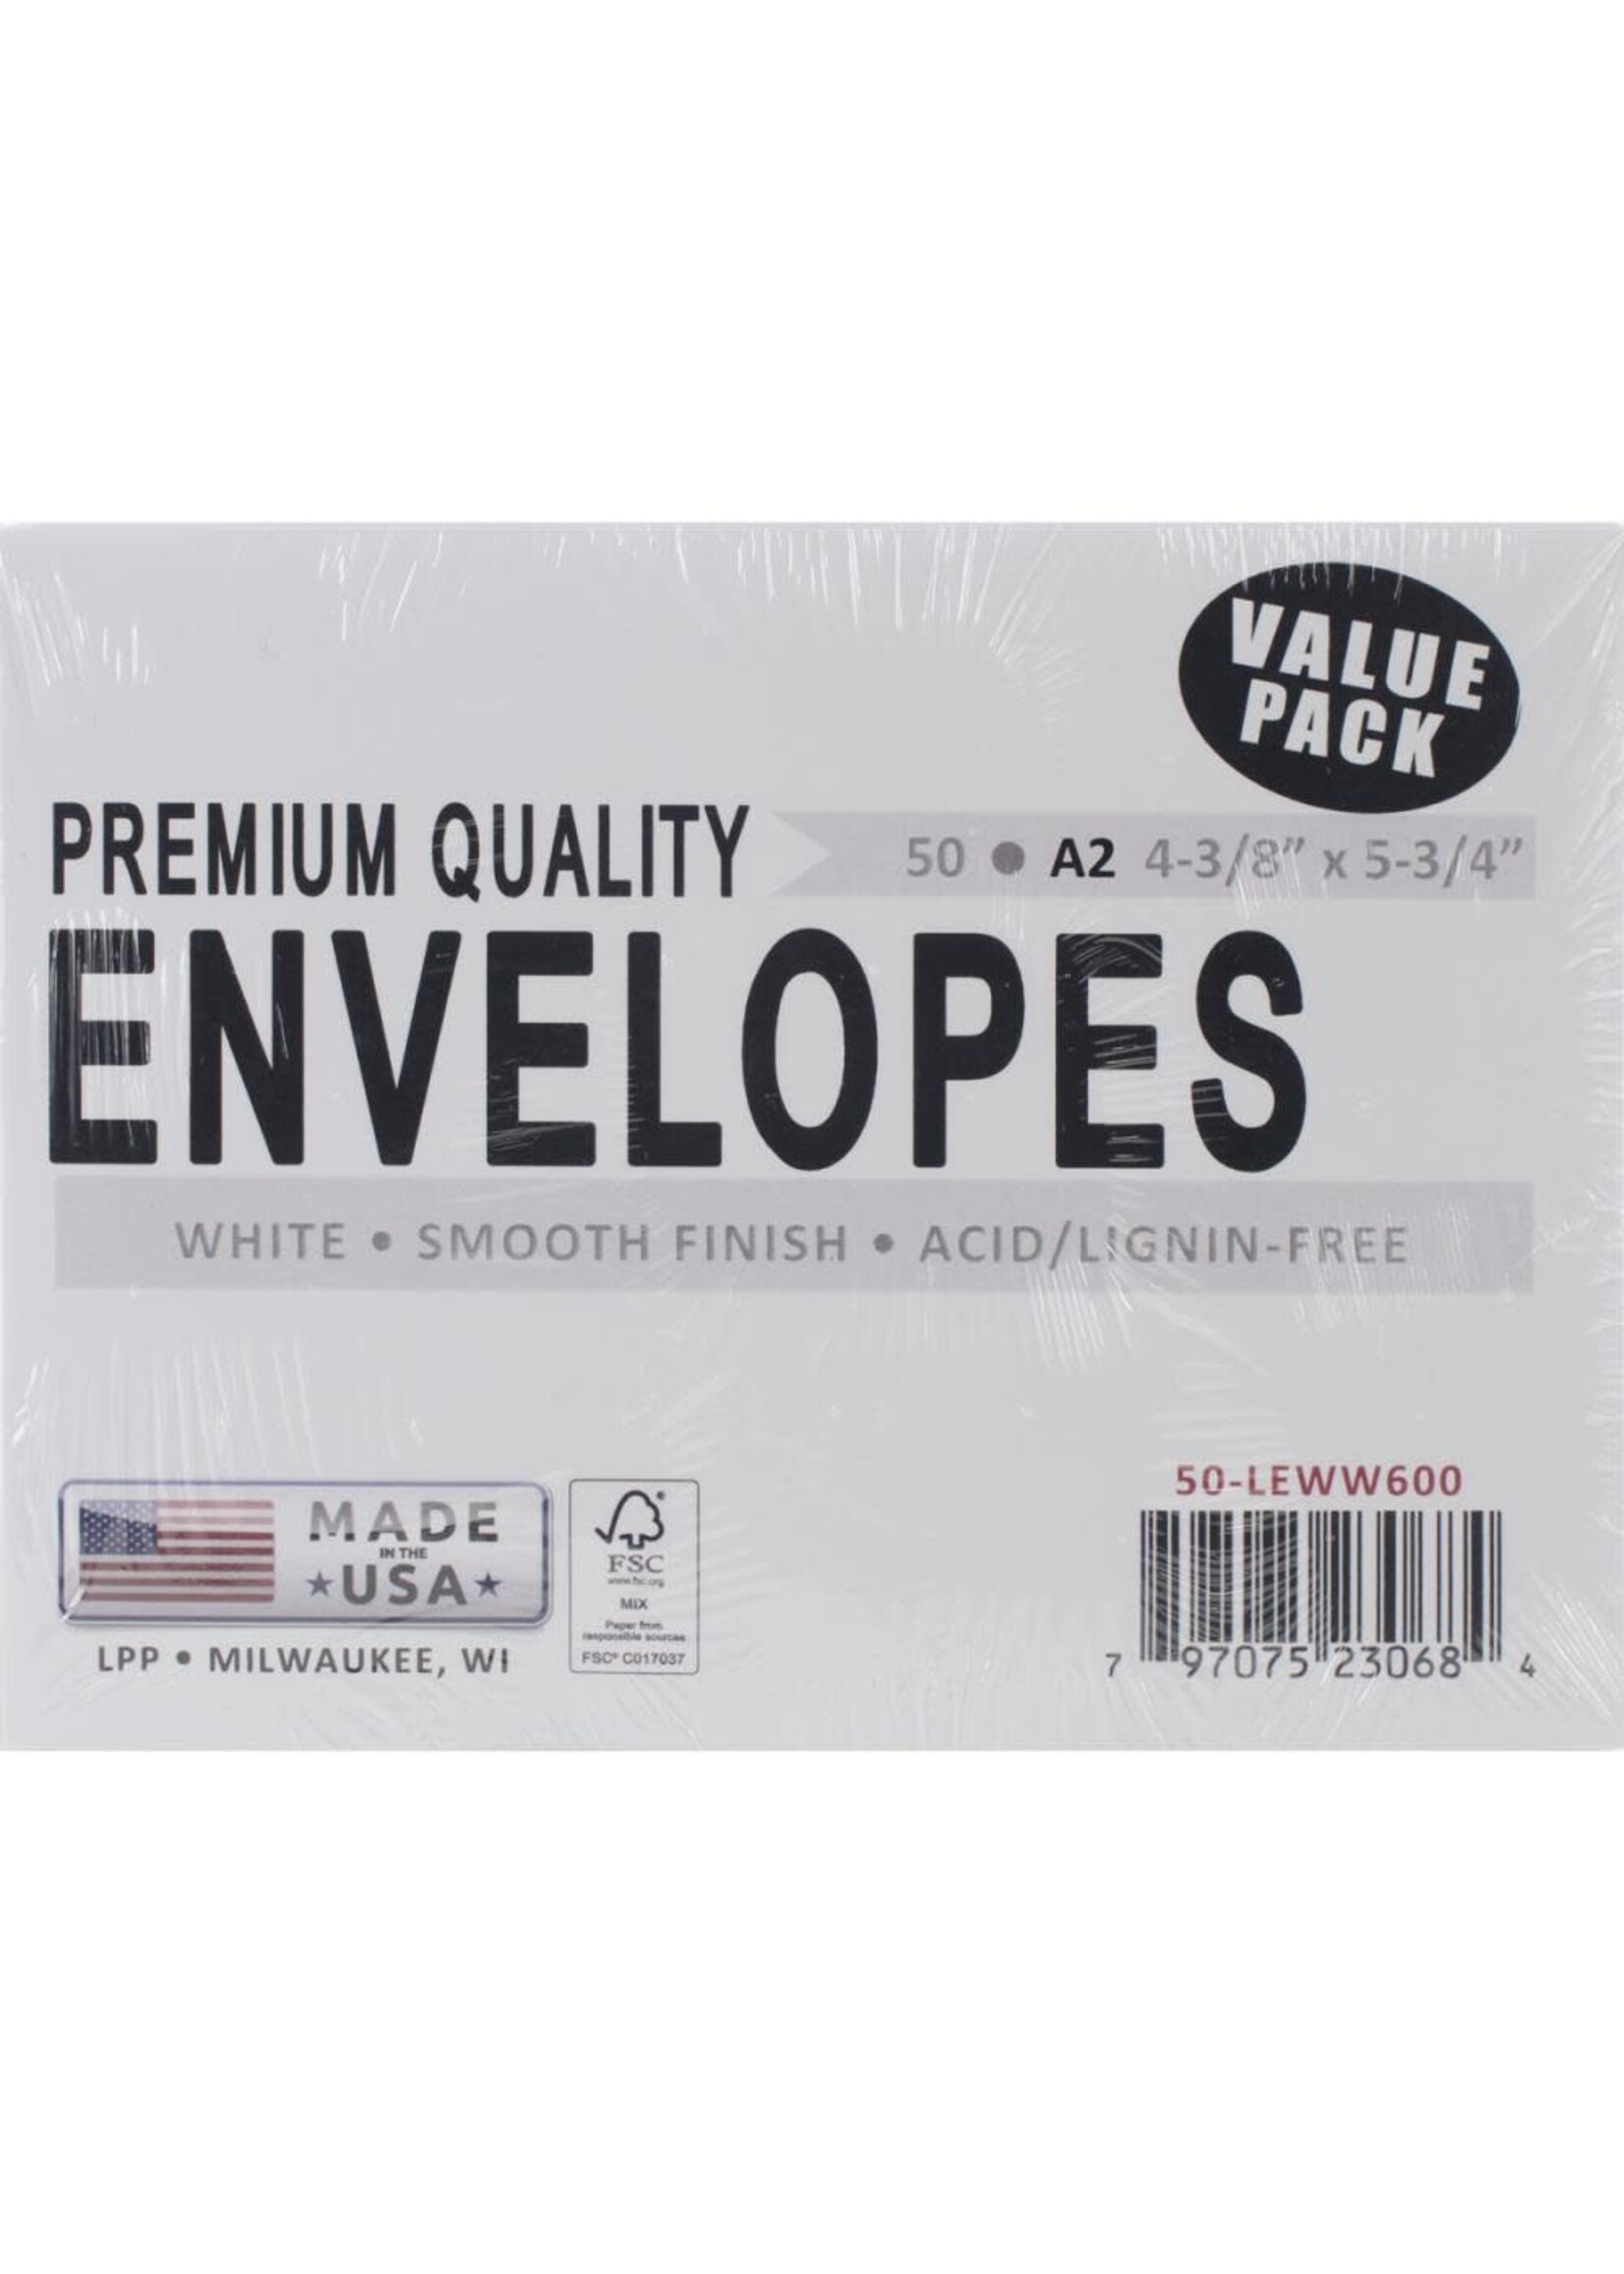 Leader Value Pack Premium Quality Envelopes, A2 White (50)